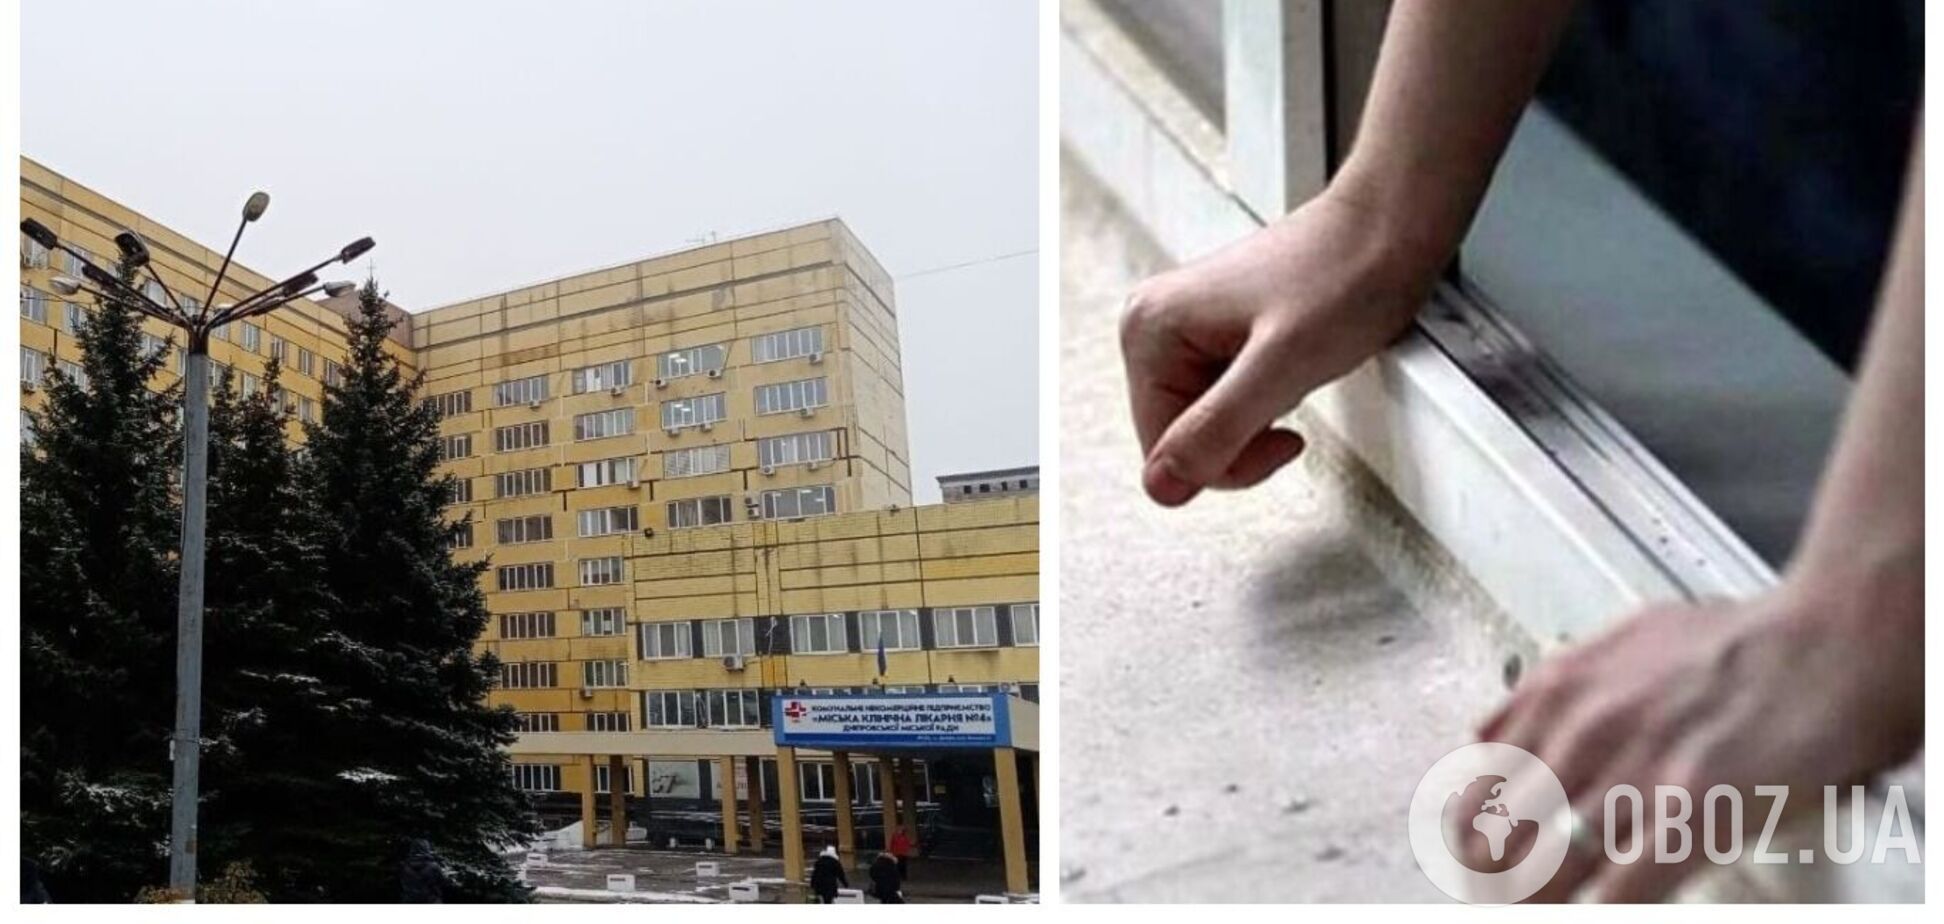 В Днепре мужчина выпрыгнул с 7-го этажа больницы: выяснились детали ЧП